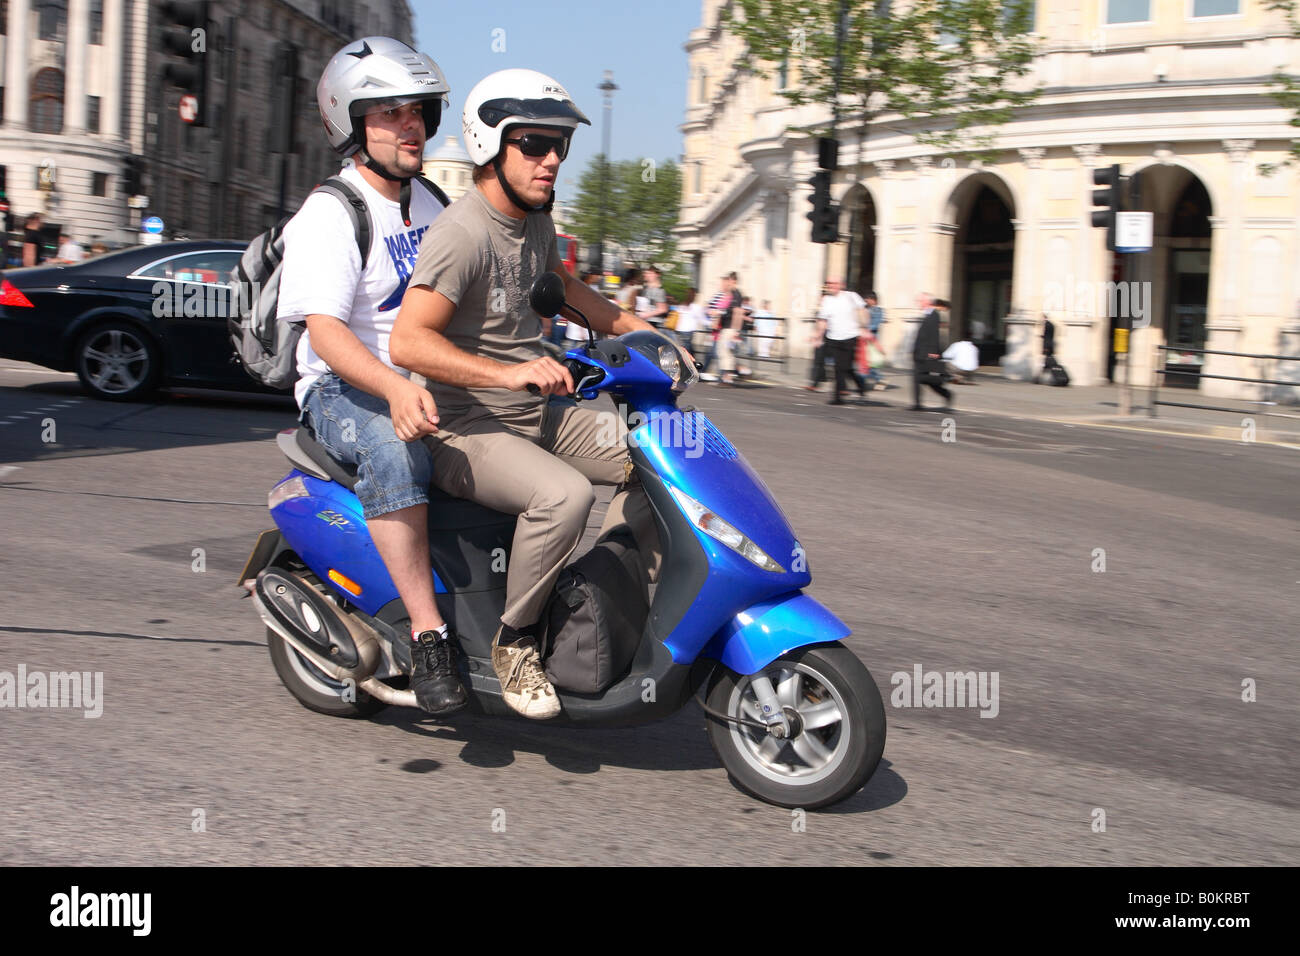 Londres scooter moto avec leurs passagers de trains de banlieue au volant autour de Trafalgar Square Banque D'Images